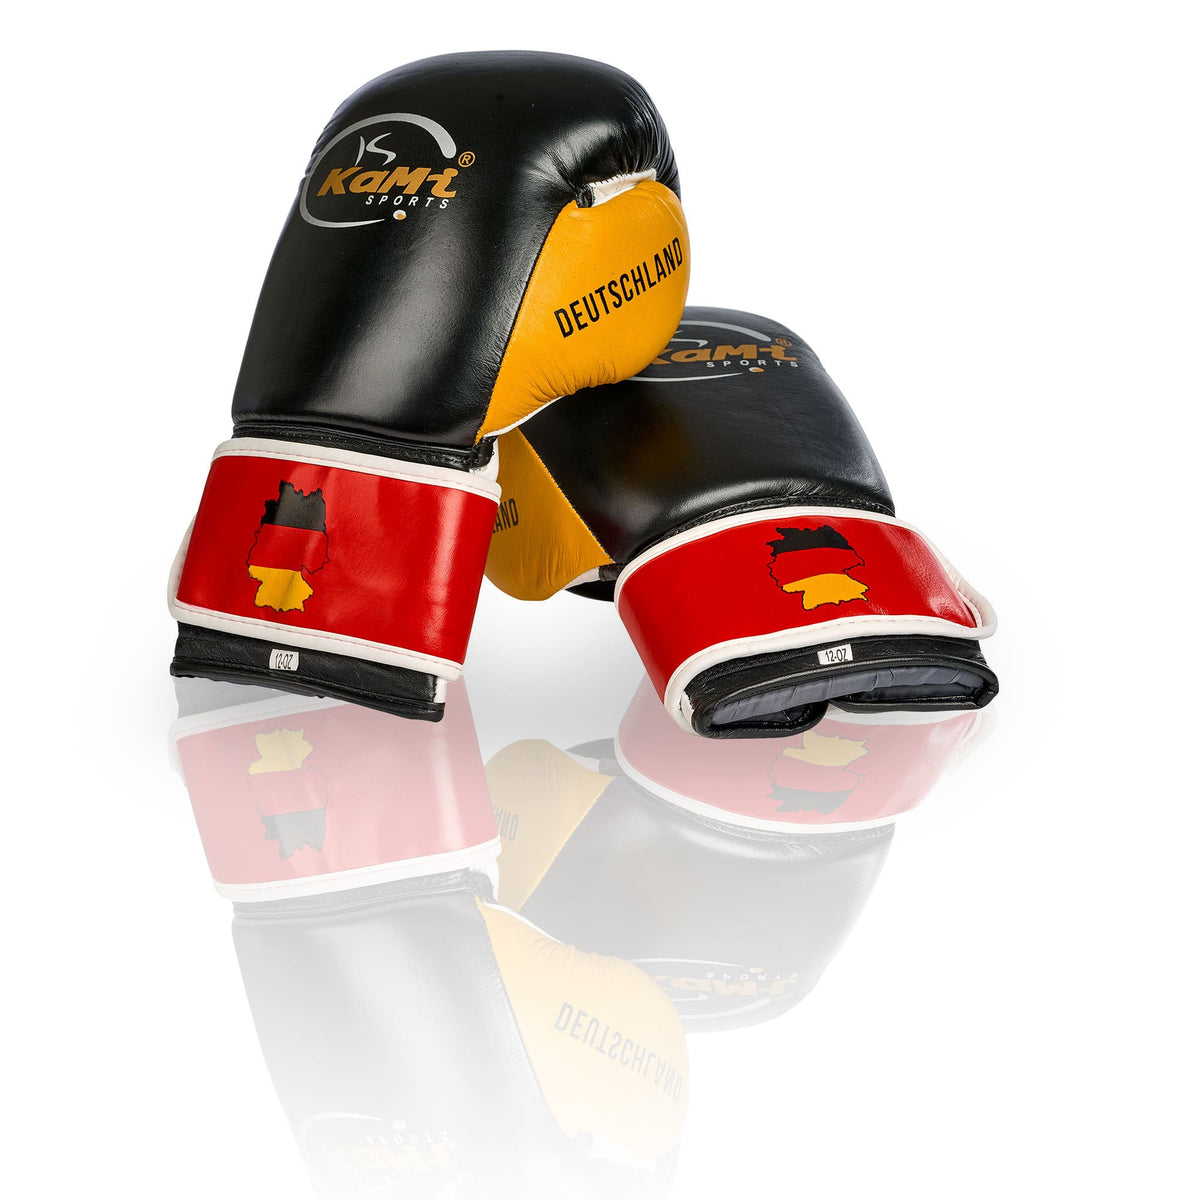 Premium Boxhandschuhe aus echtem Leder mit deutscher Flagge, optimal für Training und Sparring, fortschrittlicher Schutz, stilvolles Design.